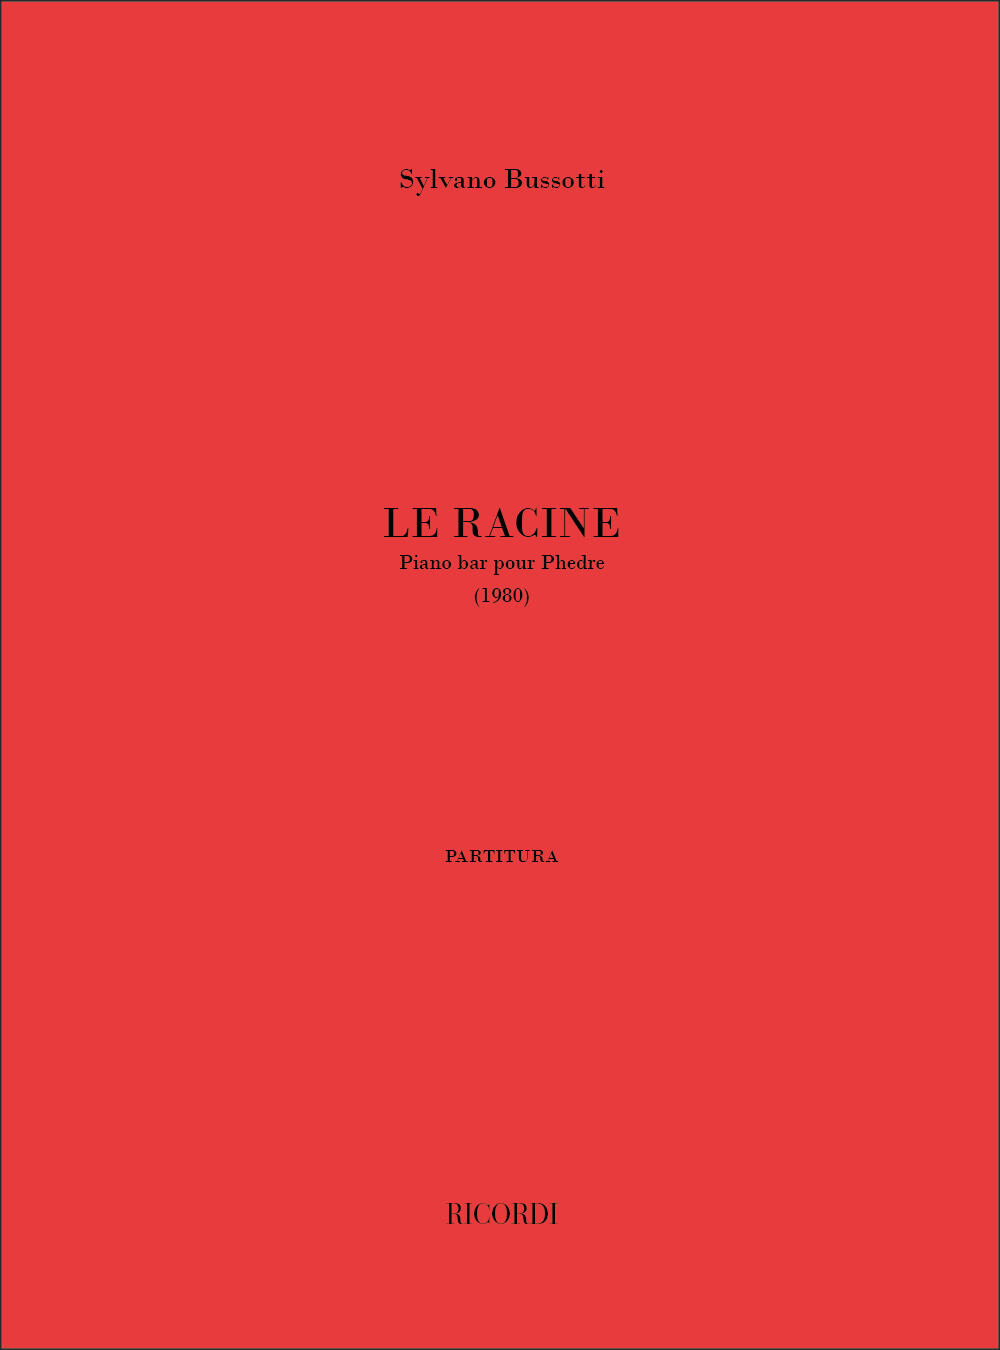 Le Racine. Pianobar Pour Phedre  Sylvano Bussotti  Vocal and Piano Conducteur  Opéra-opérette : photo 1